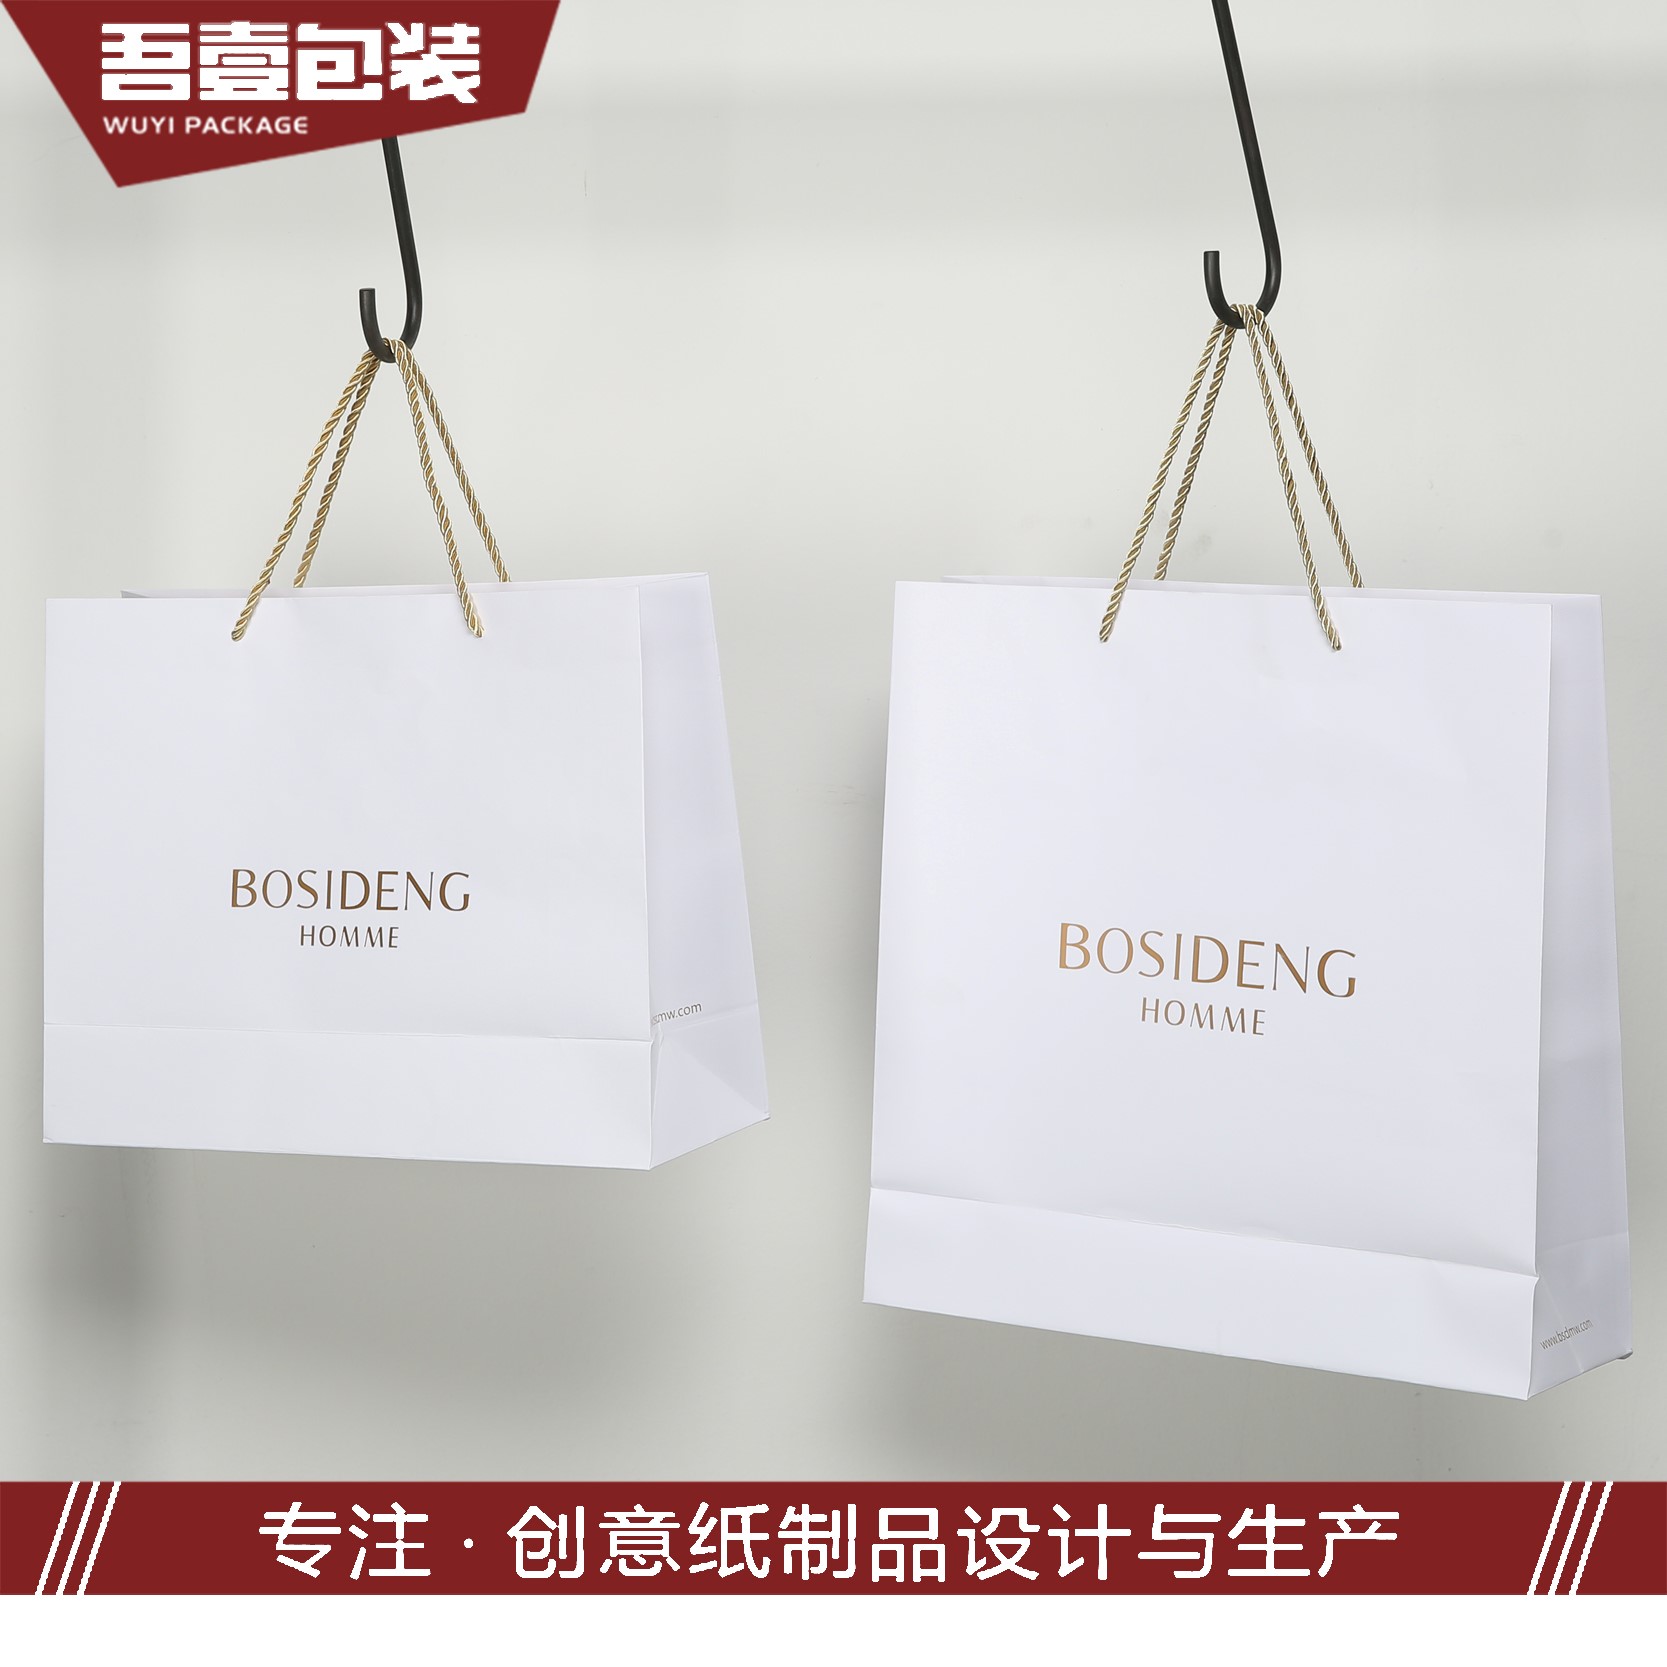 苏州吾壹包装彩印有限公司将参加GPPE上海礼品包装展